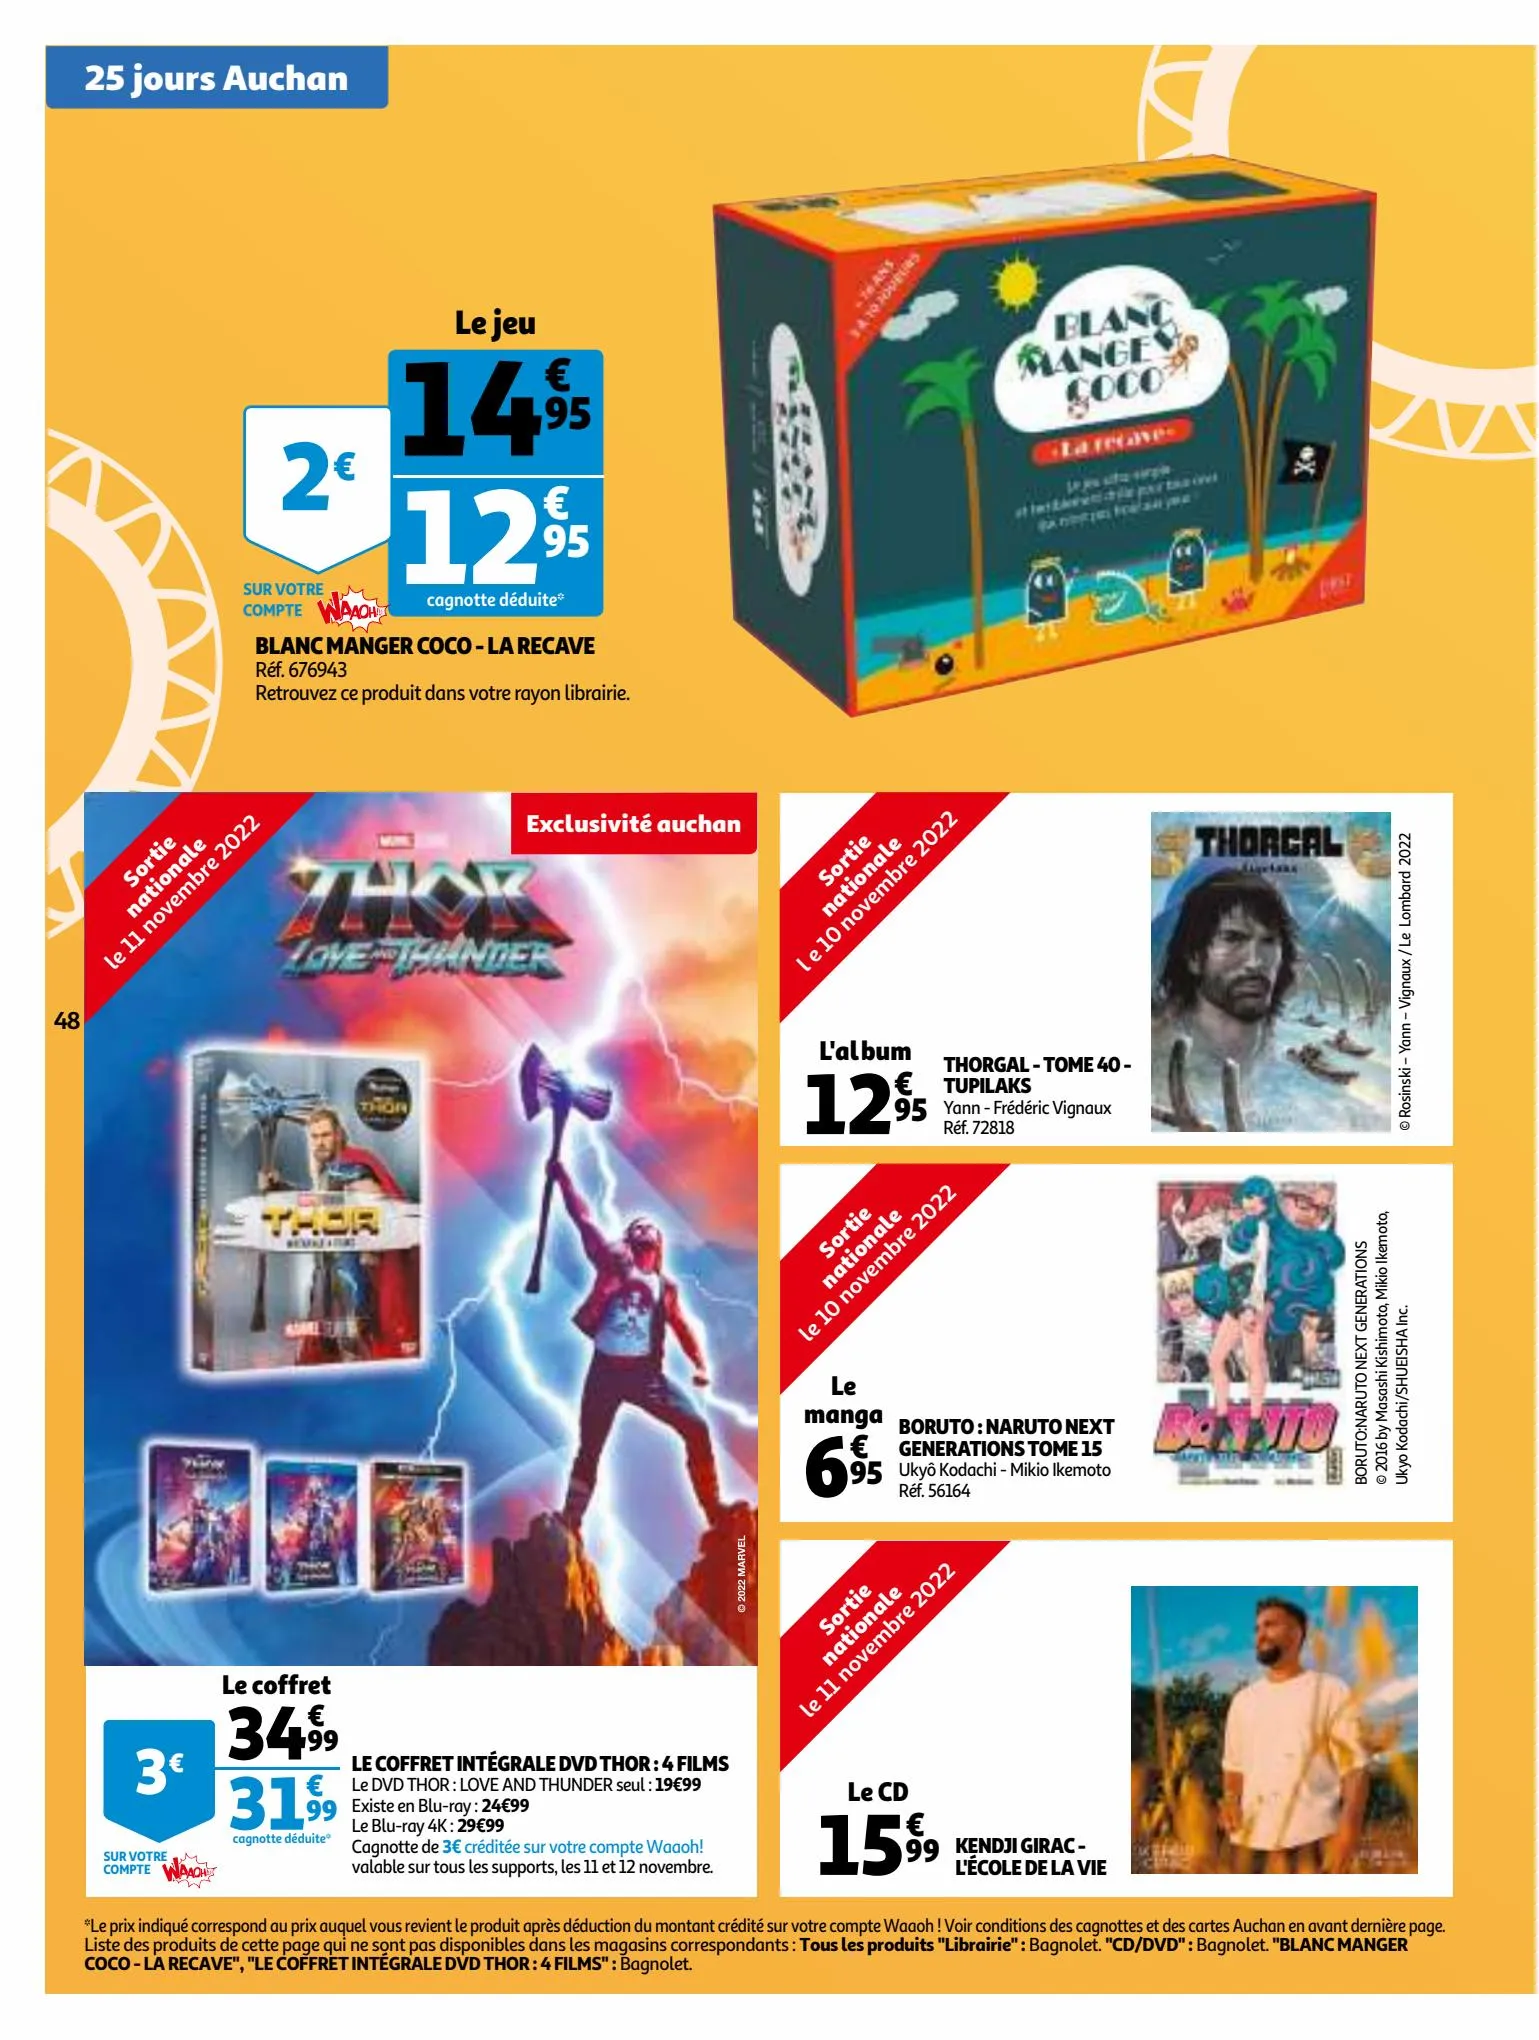 Catalogue 25 Jours Auchan, page 00048